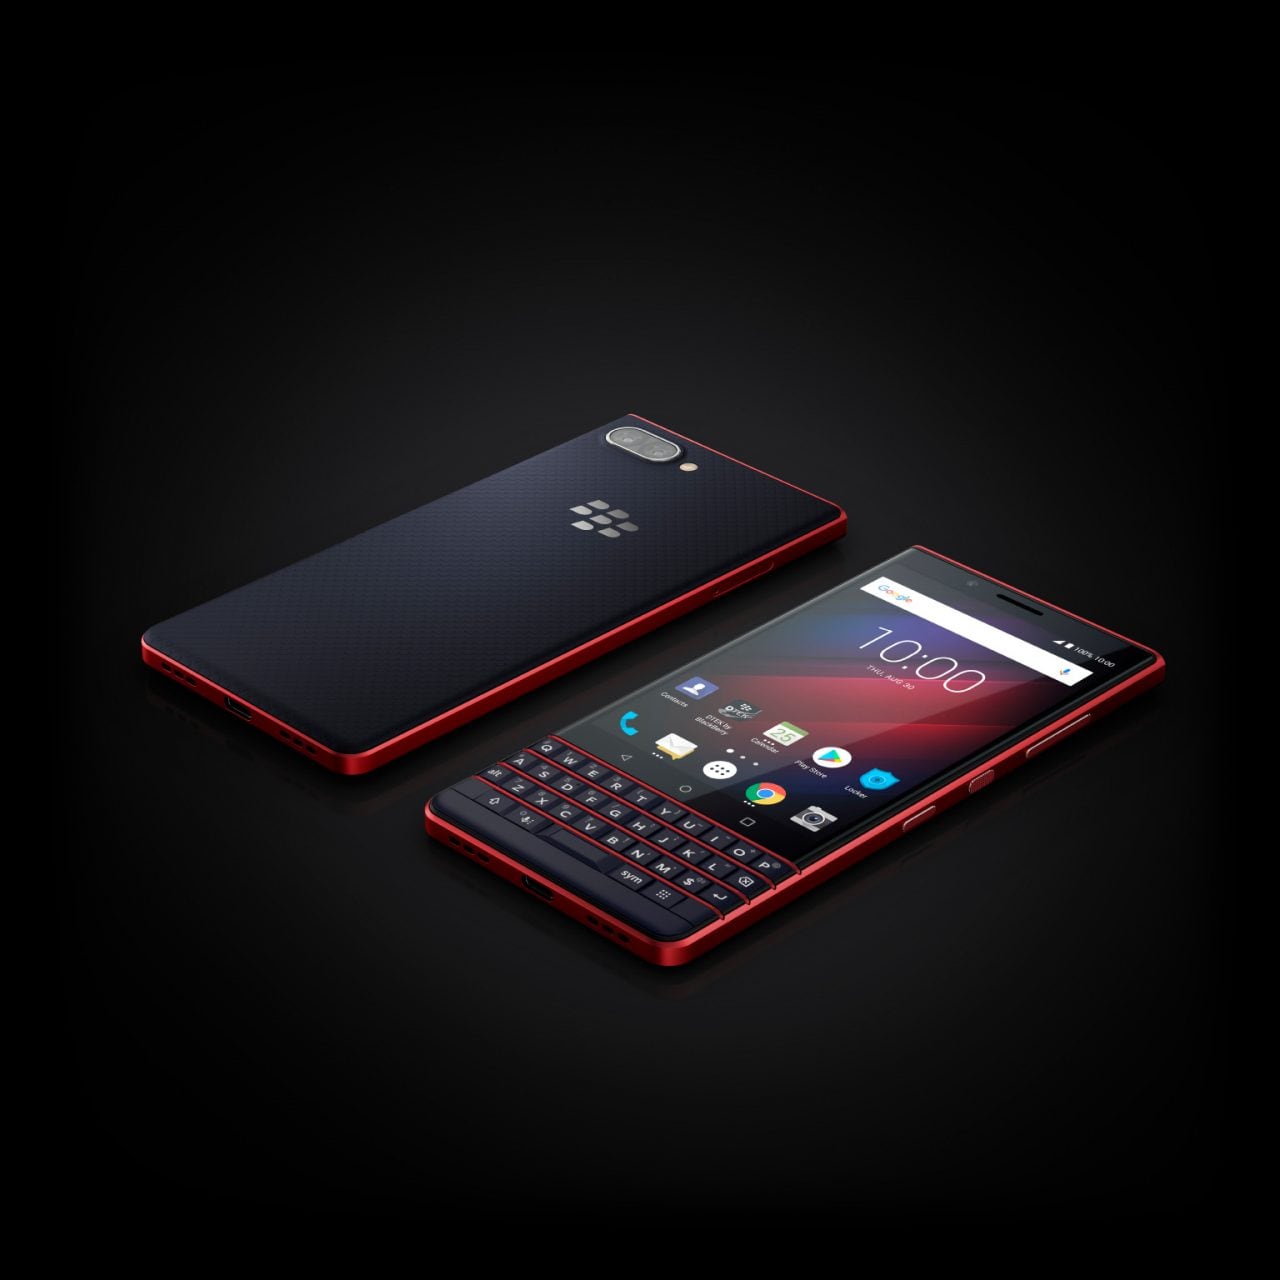 BlackBerry KEY2 LE è disponibile al pre-ordine sullo shop ufficiale anche nella suggestiva colorazione Atomic